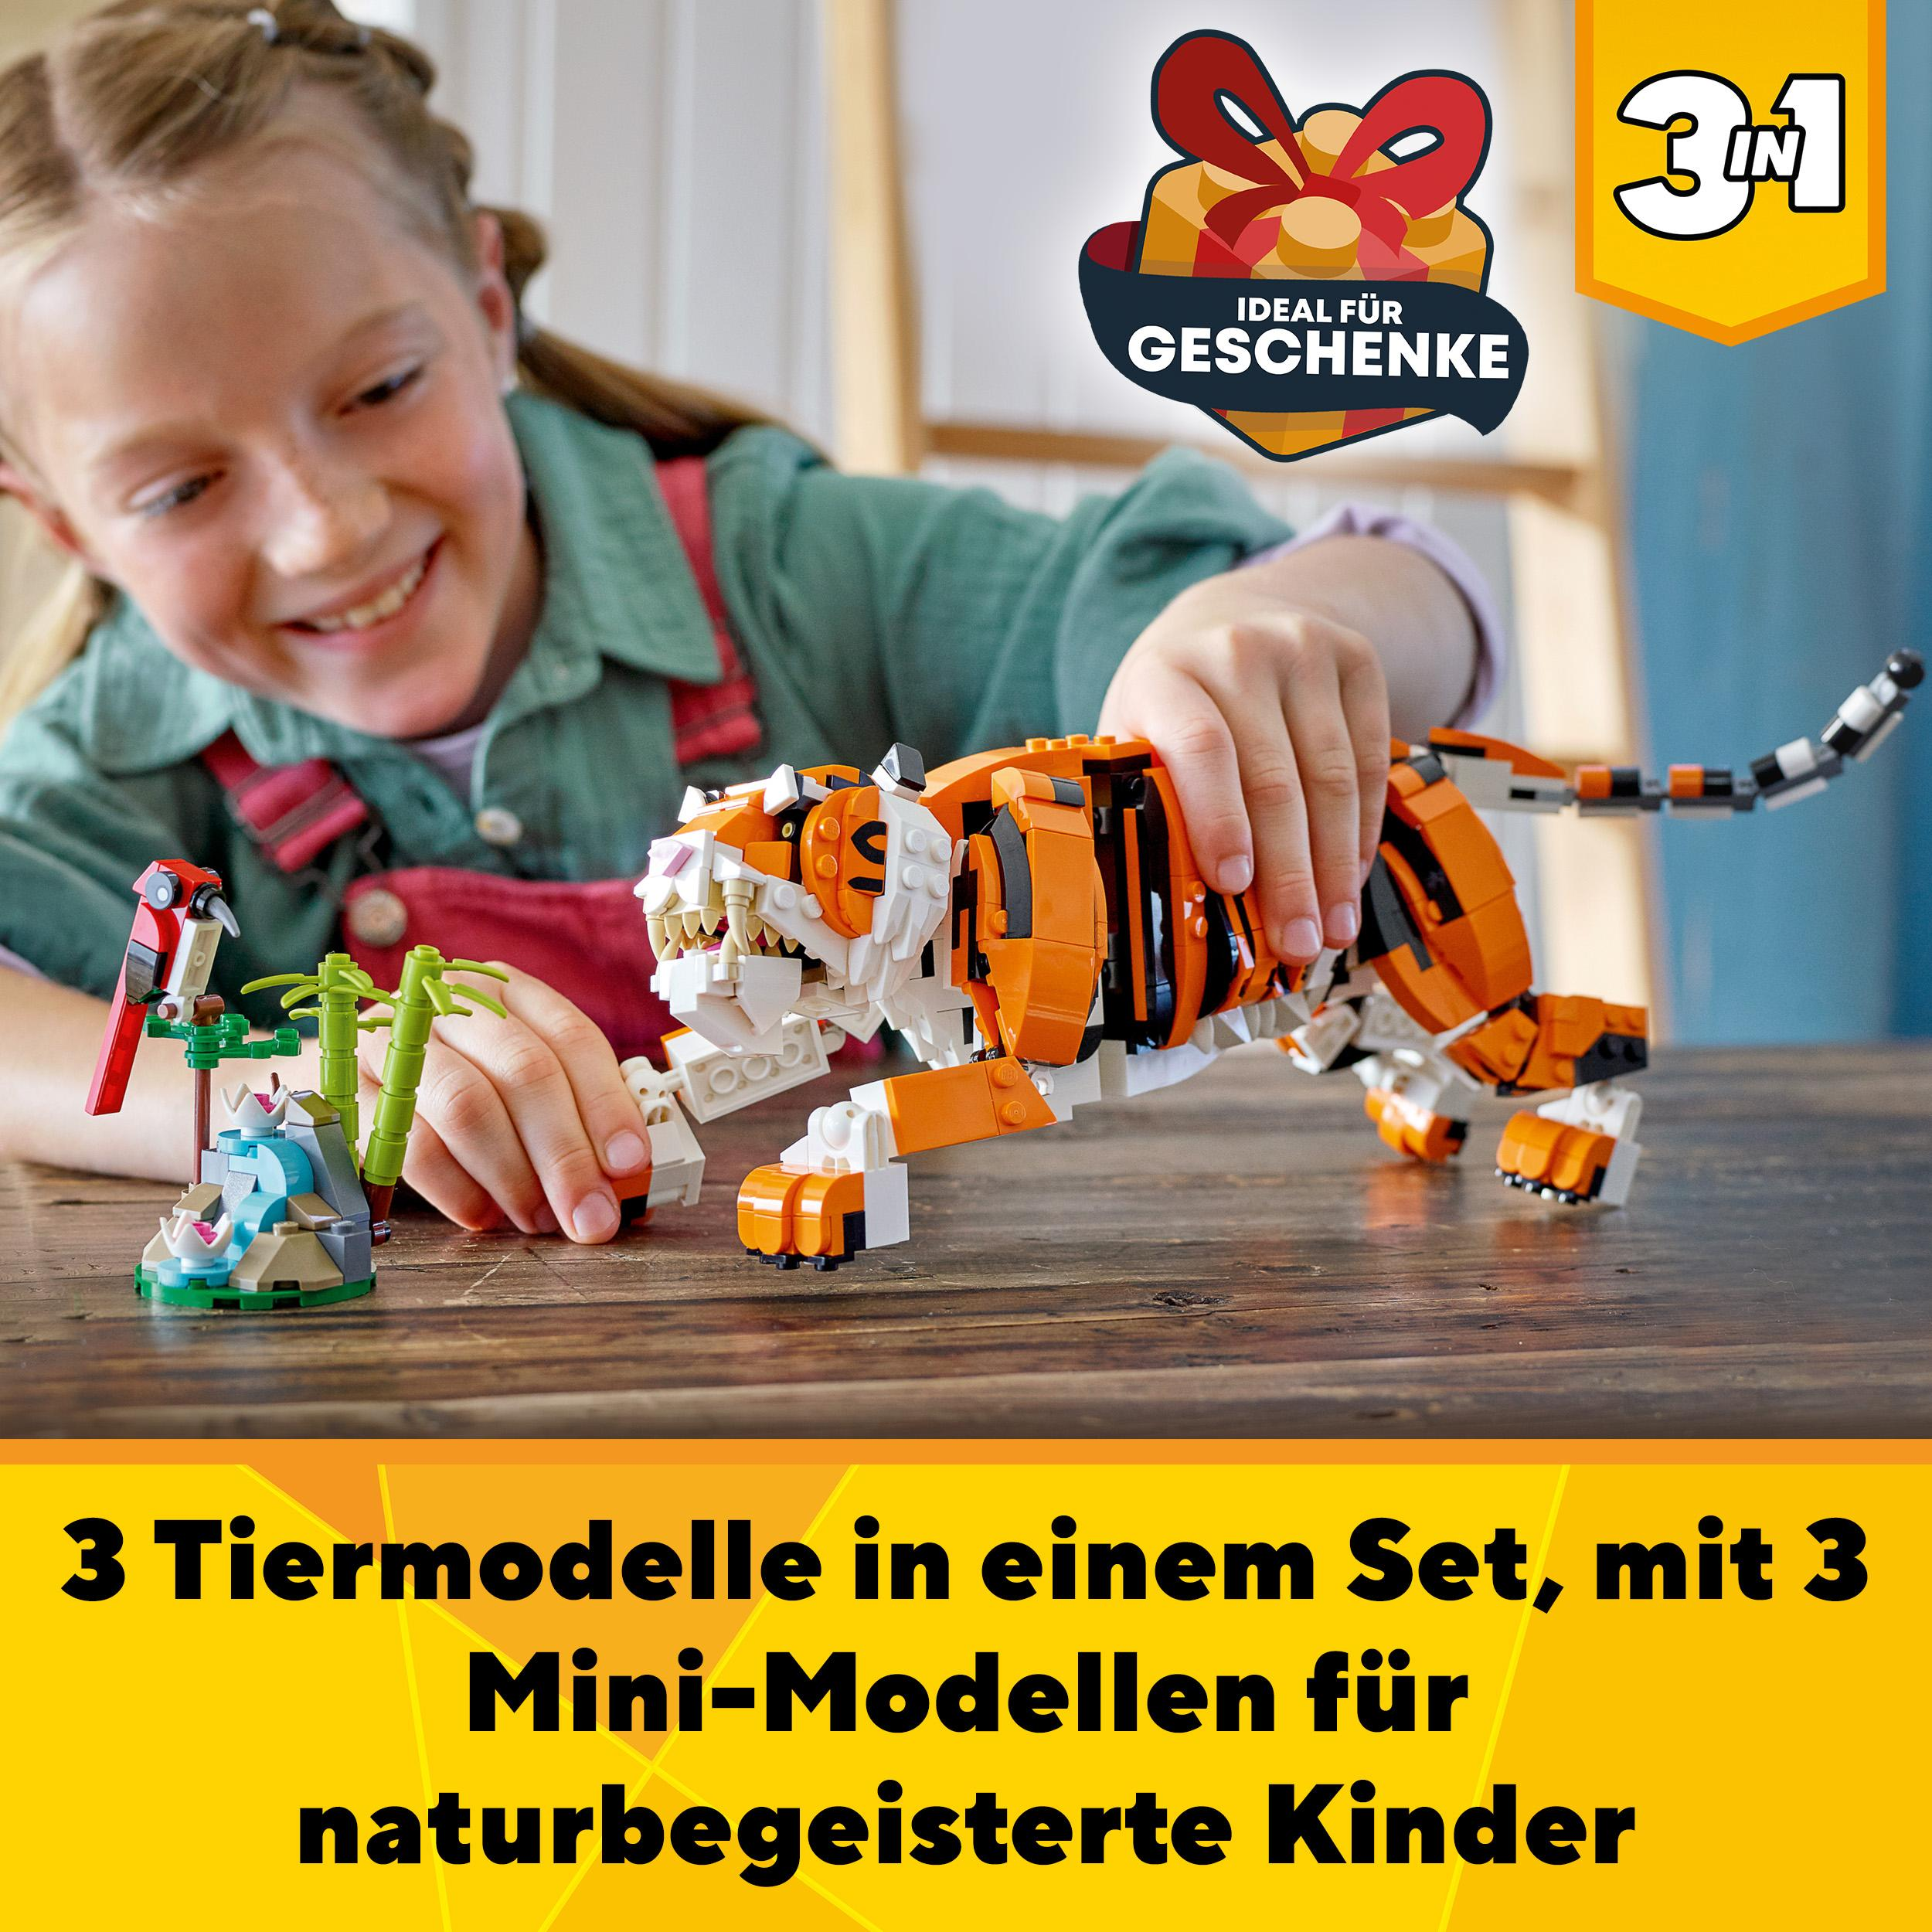 LEGO 31129 Tiger Majestätischer Creator Mehrfarbig Bausatz,